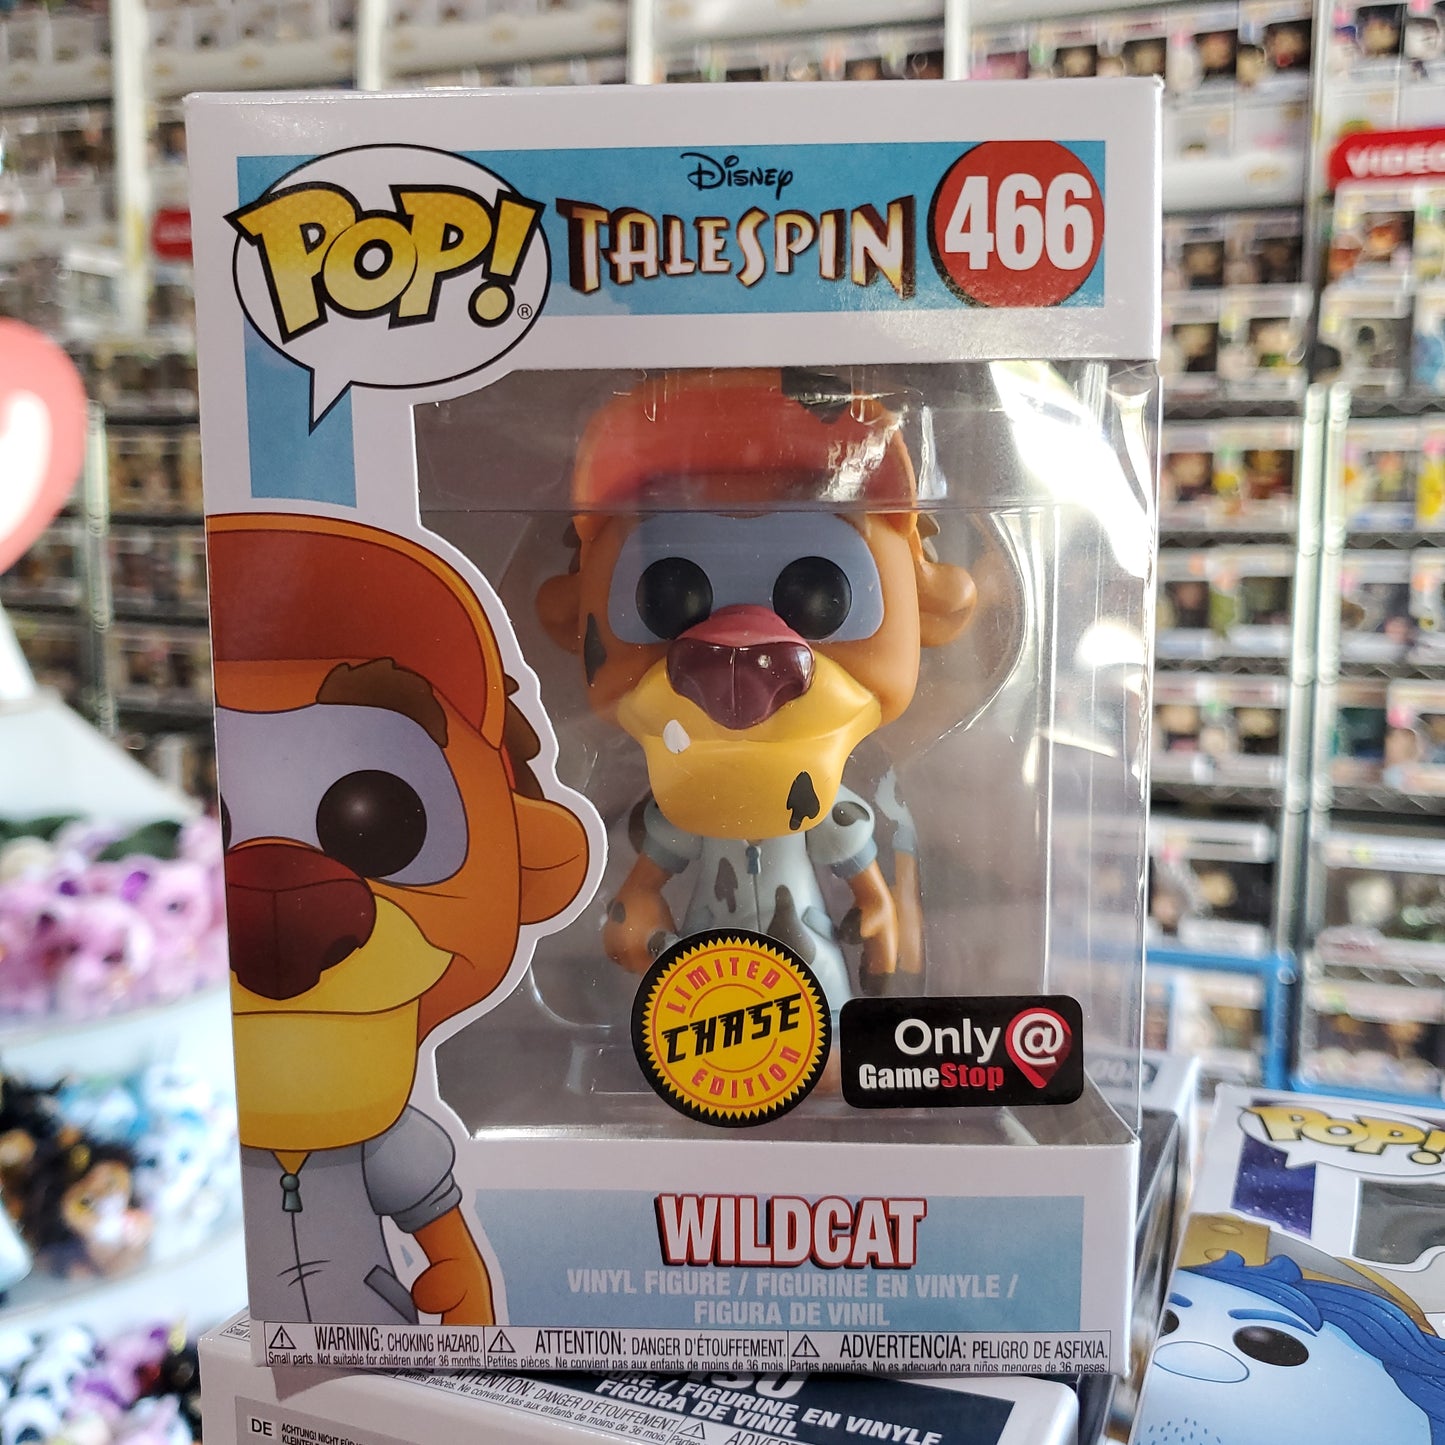 Talespin Wildcat exclusive Disney Funko Pop! VINYL Figure